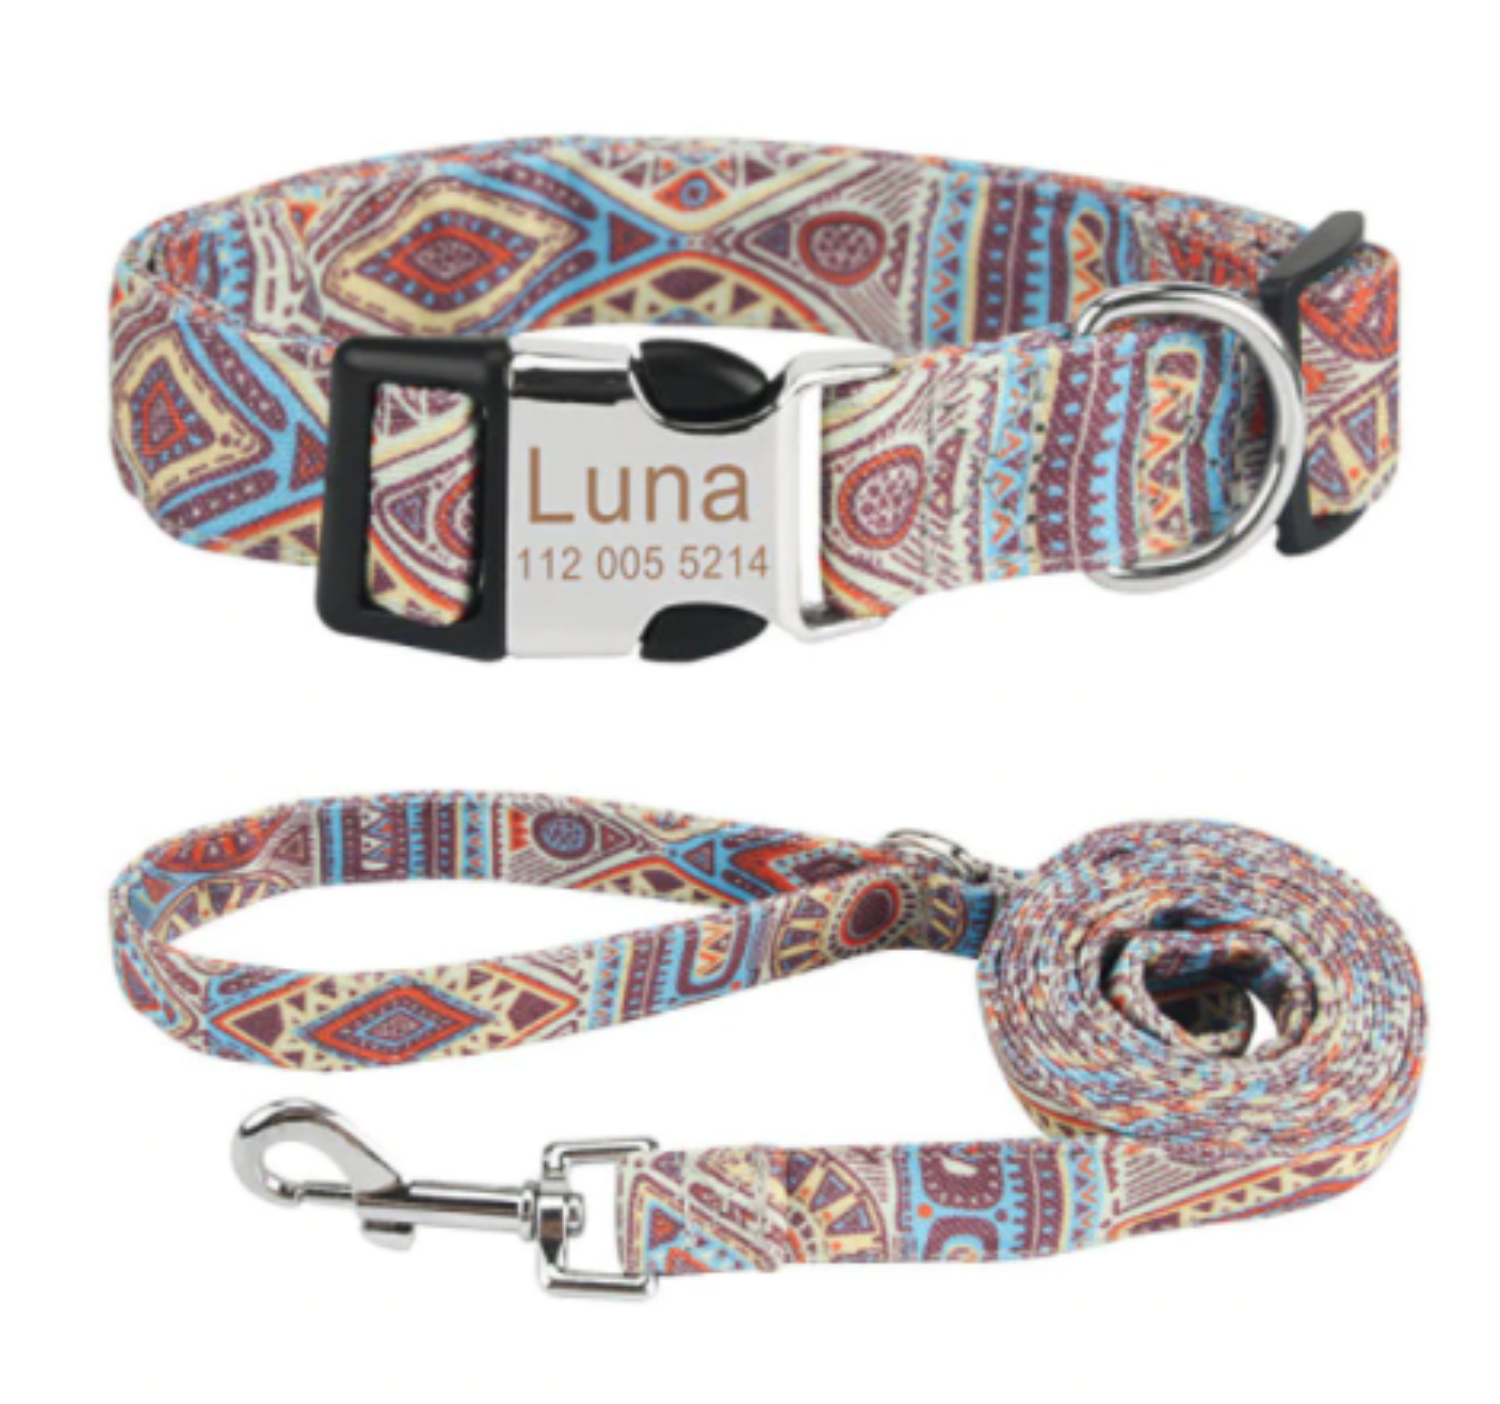  Personalisiertes Hundehalsband mit Leine - mit Name & Tel.-Nr. bedruckt boho